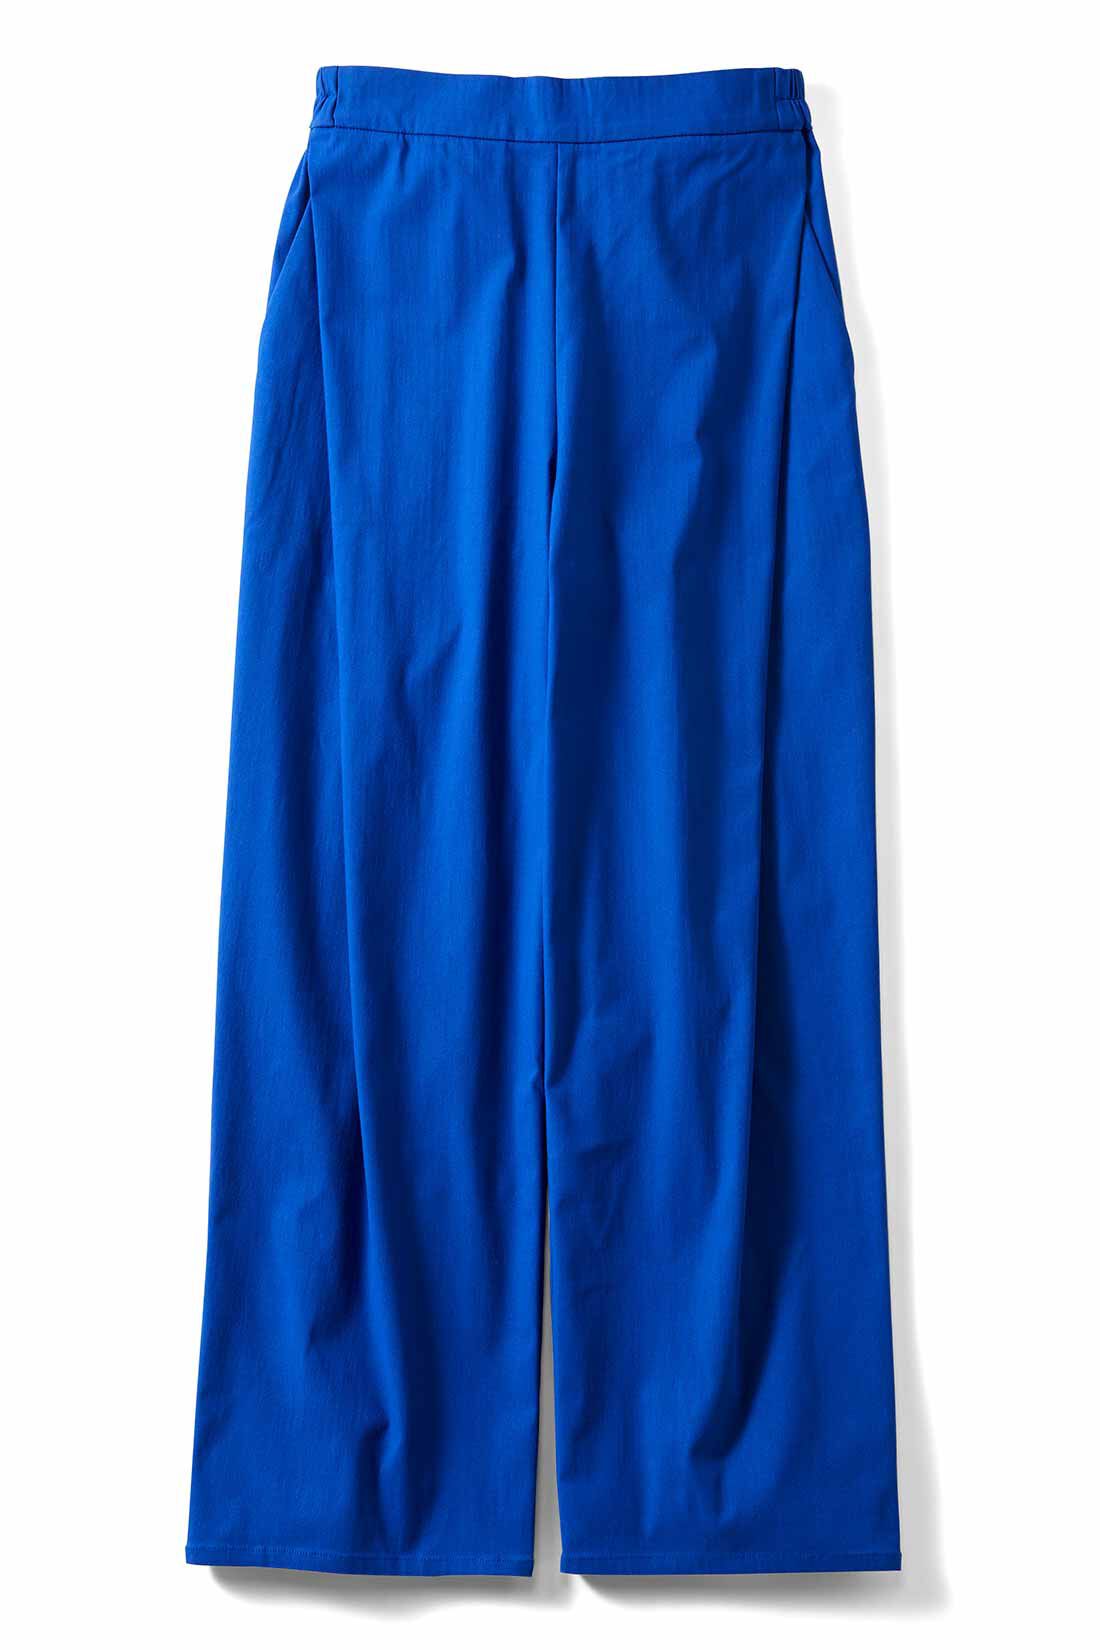 IEDIT[イディット]　ぐいっとしなやか サイドタックデザイン ストレッチ布はく素材のエアノビワイドパンツ〈ブルー〉|〈ブルー〉